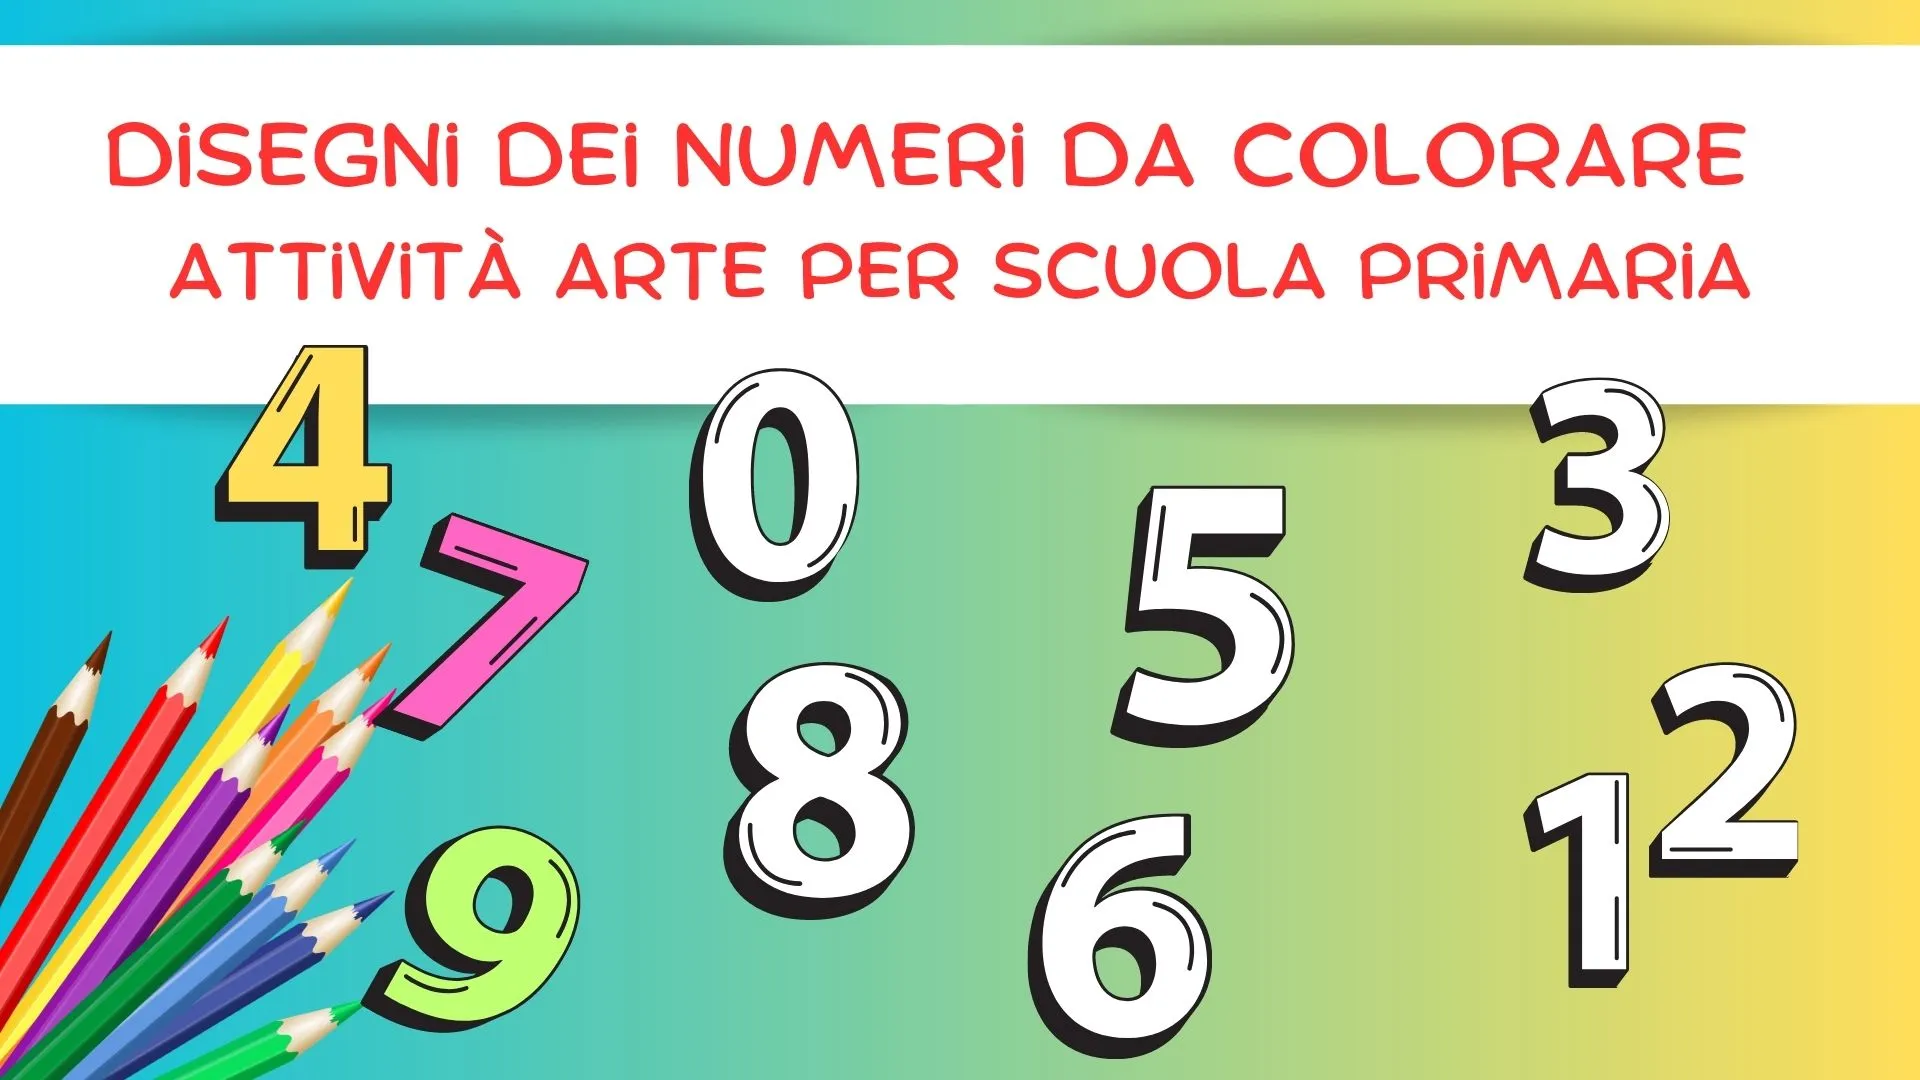 Disegni dei Numeri da Colorare - Attività Arte per Scuola Primaria -  SostegnO 2.0